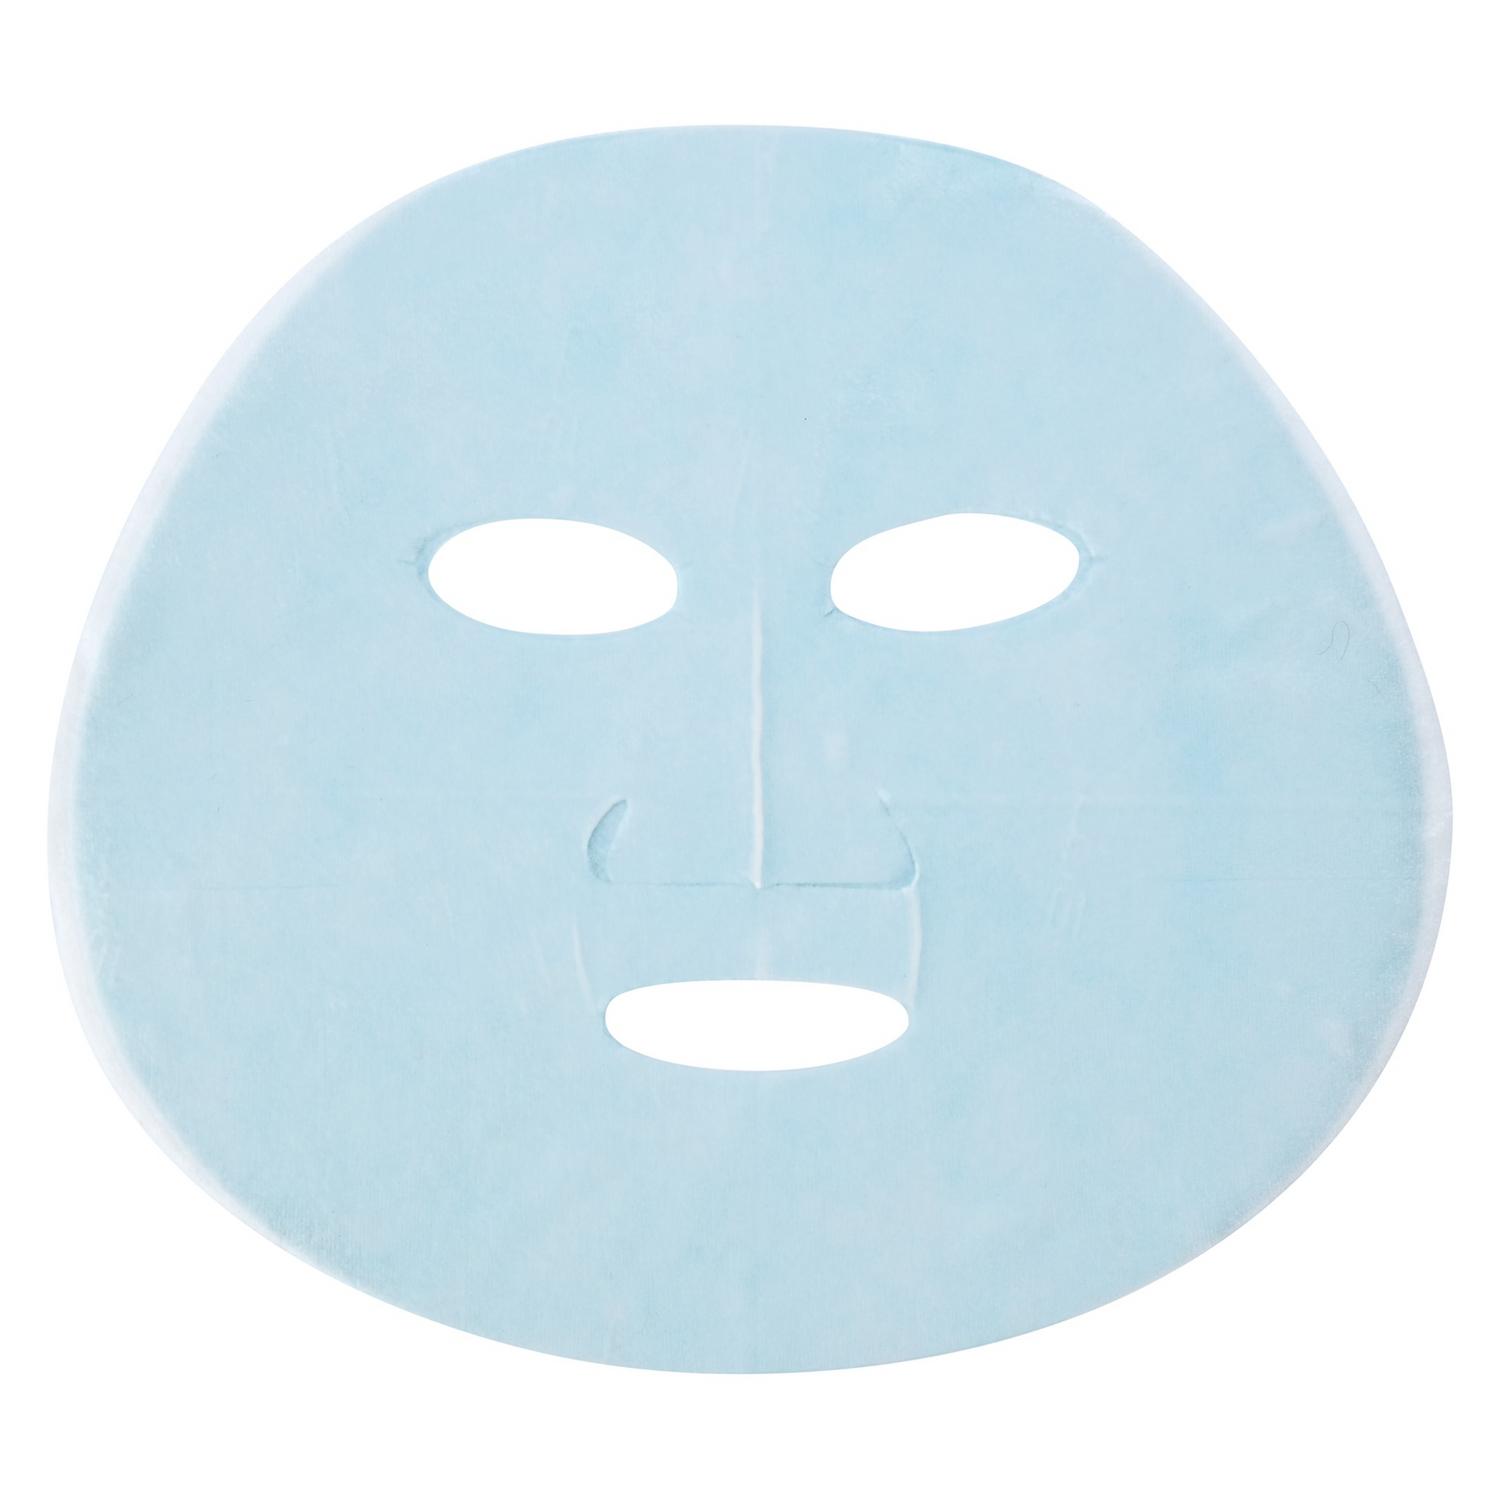 Тканевая маска Garnier Увлажнение + Антистресс супер увлажняющая снимающая усталость 32 г, размер 16x17,5x0,3 см C5852600 - фото 3